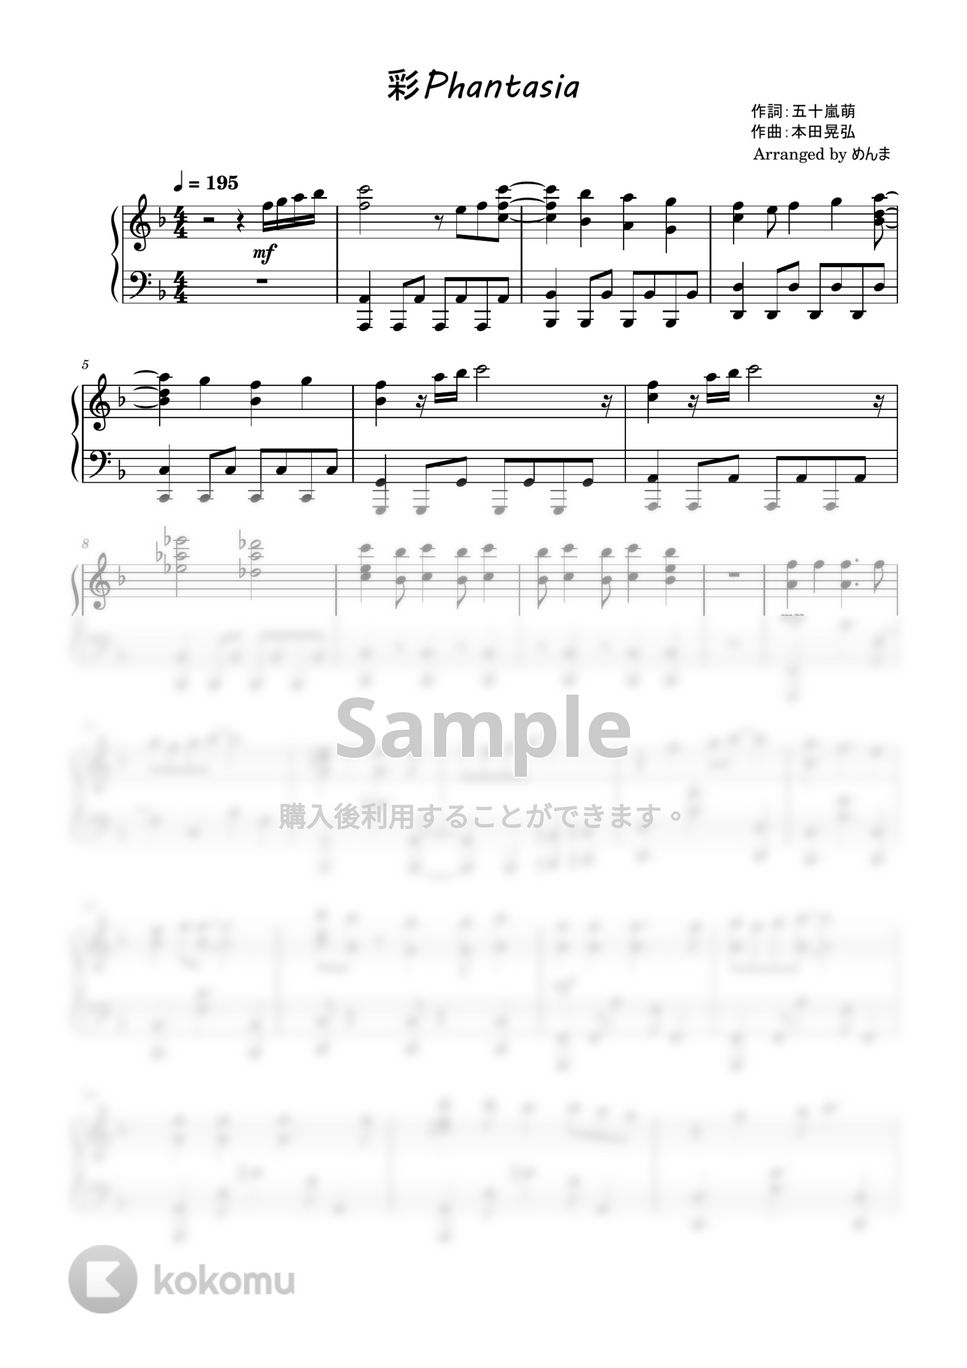 ウマ娘プリティーダービー - 彩Phantasia (ピアノ　ソロ) by めんま